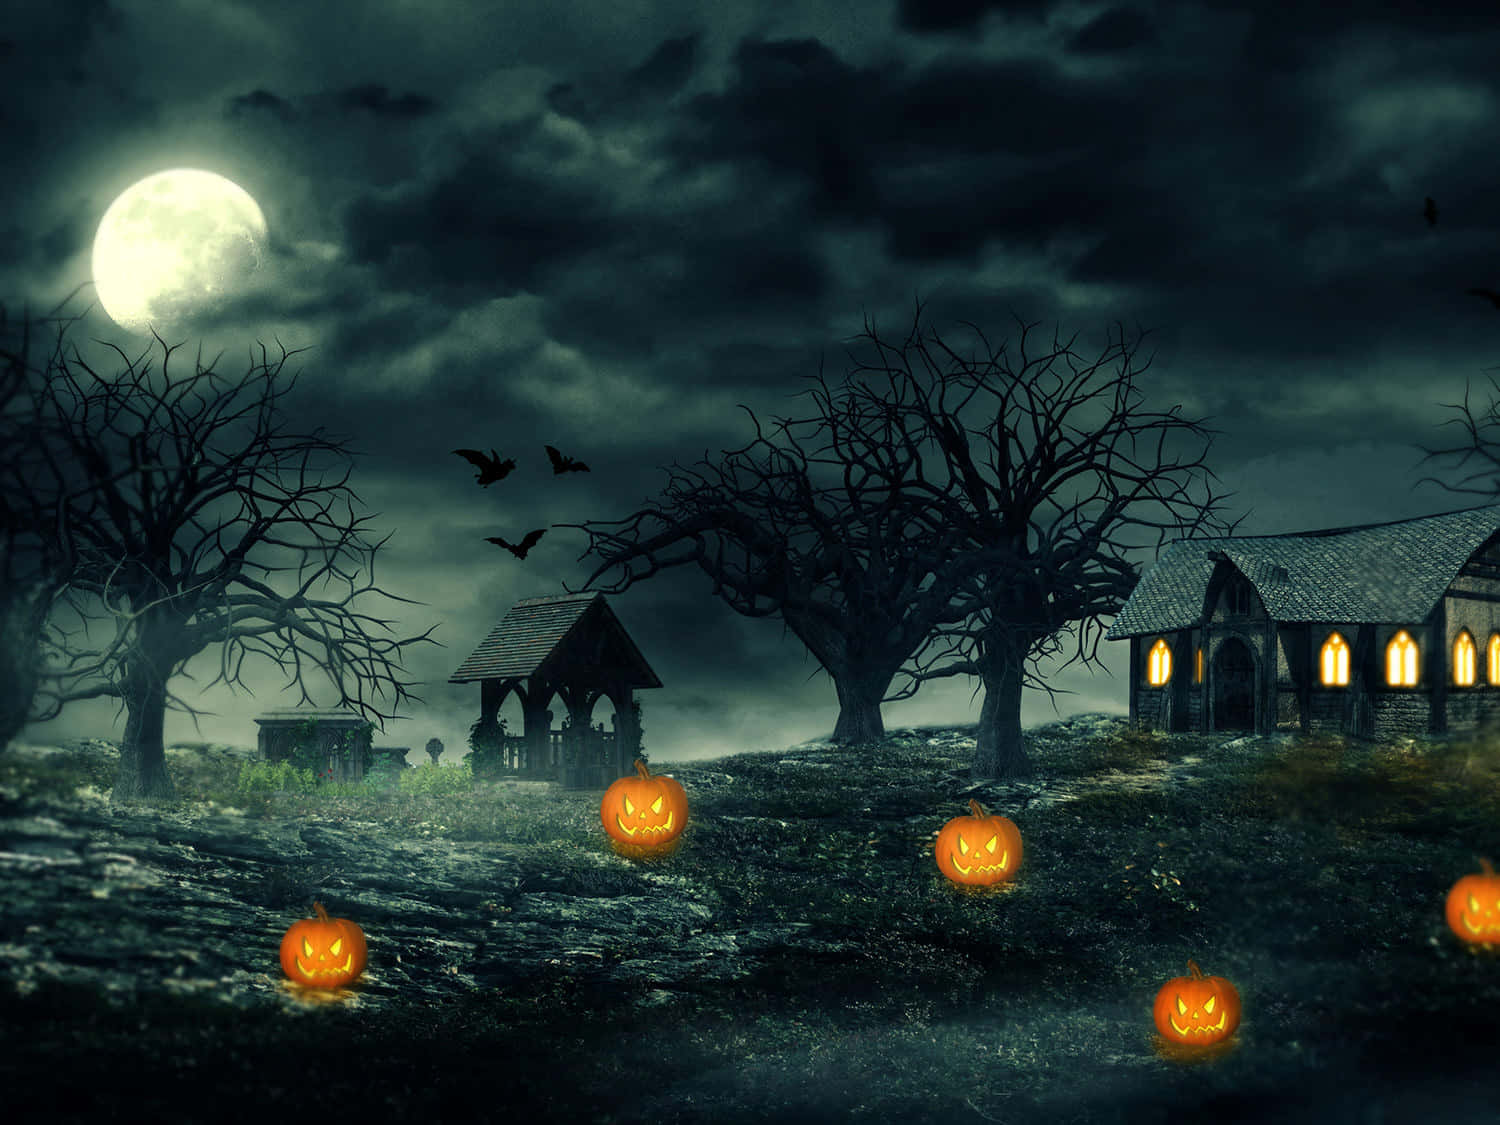 Gördin Profil Läskig Inför Halloween Genom Att Välja En Lämplig Dator- Eller Mobilbakgrundsbild.